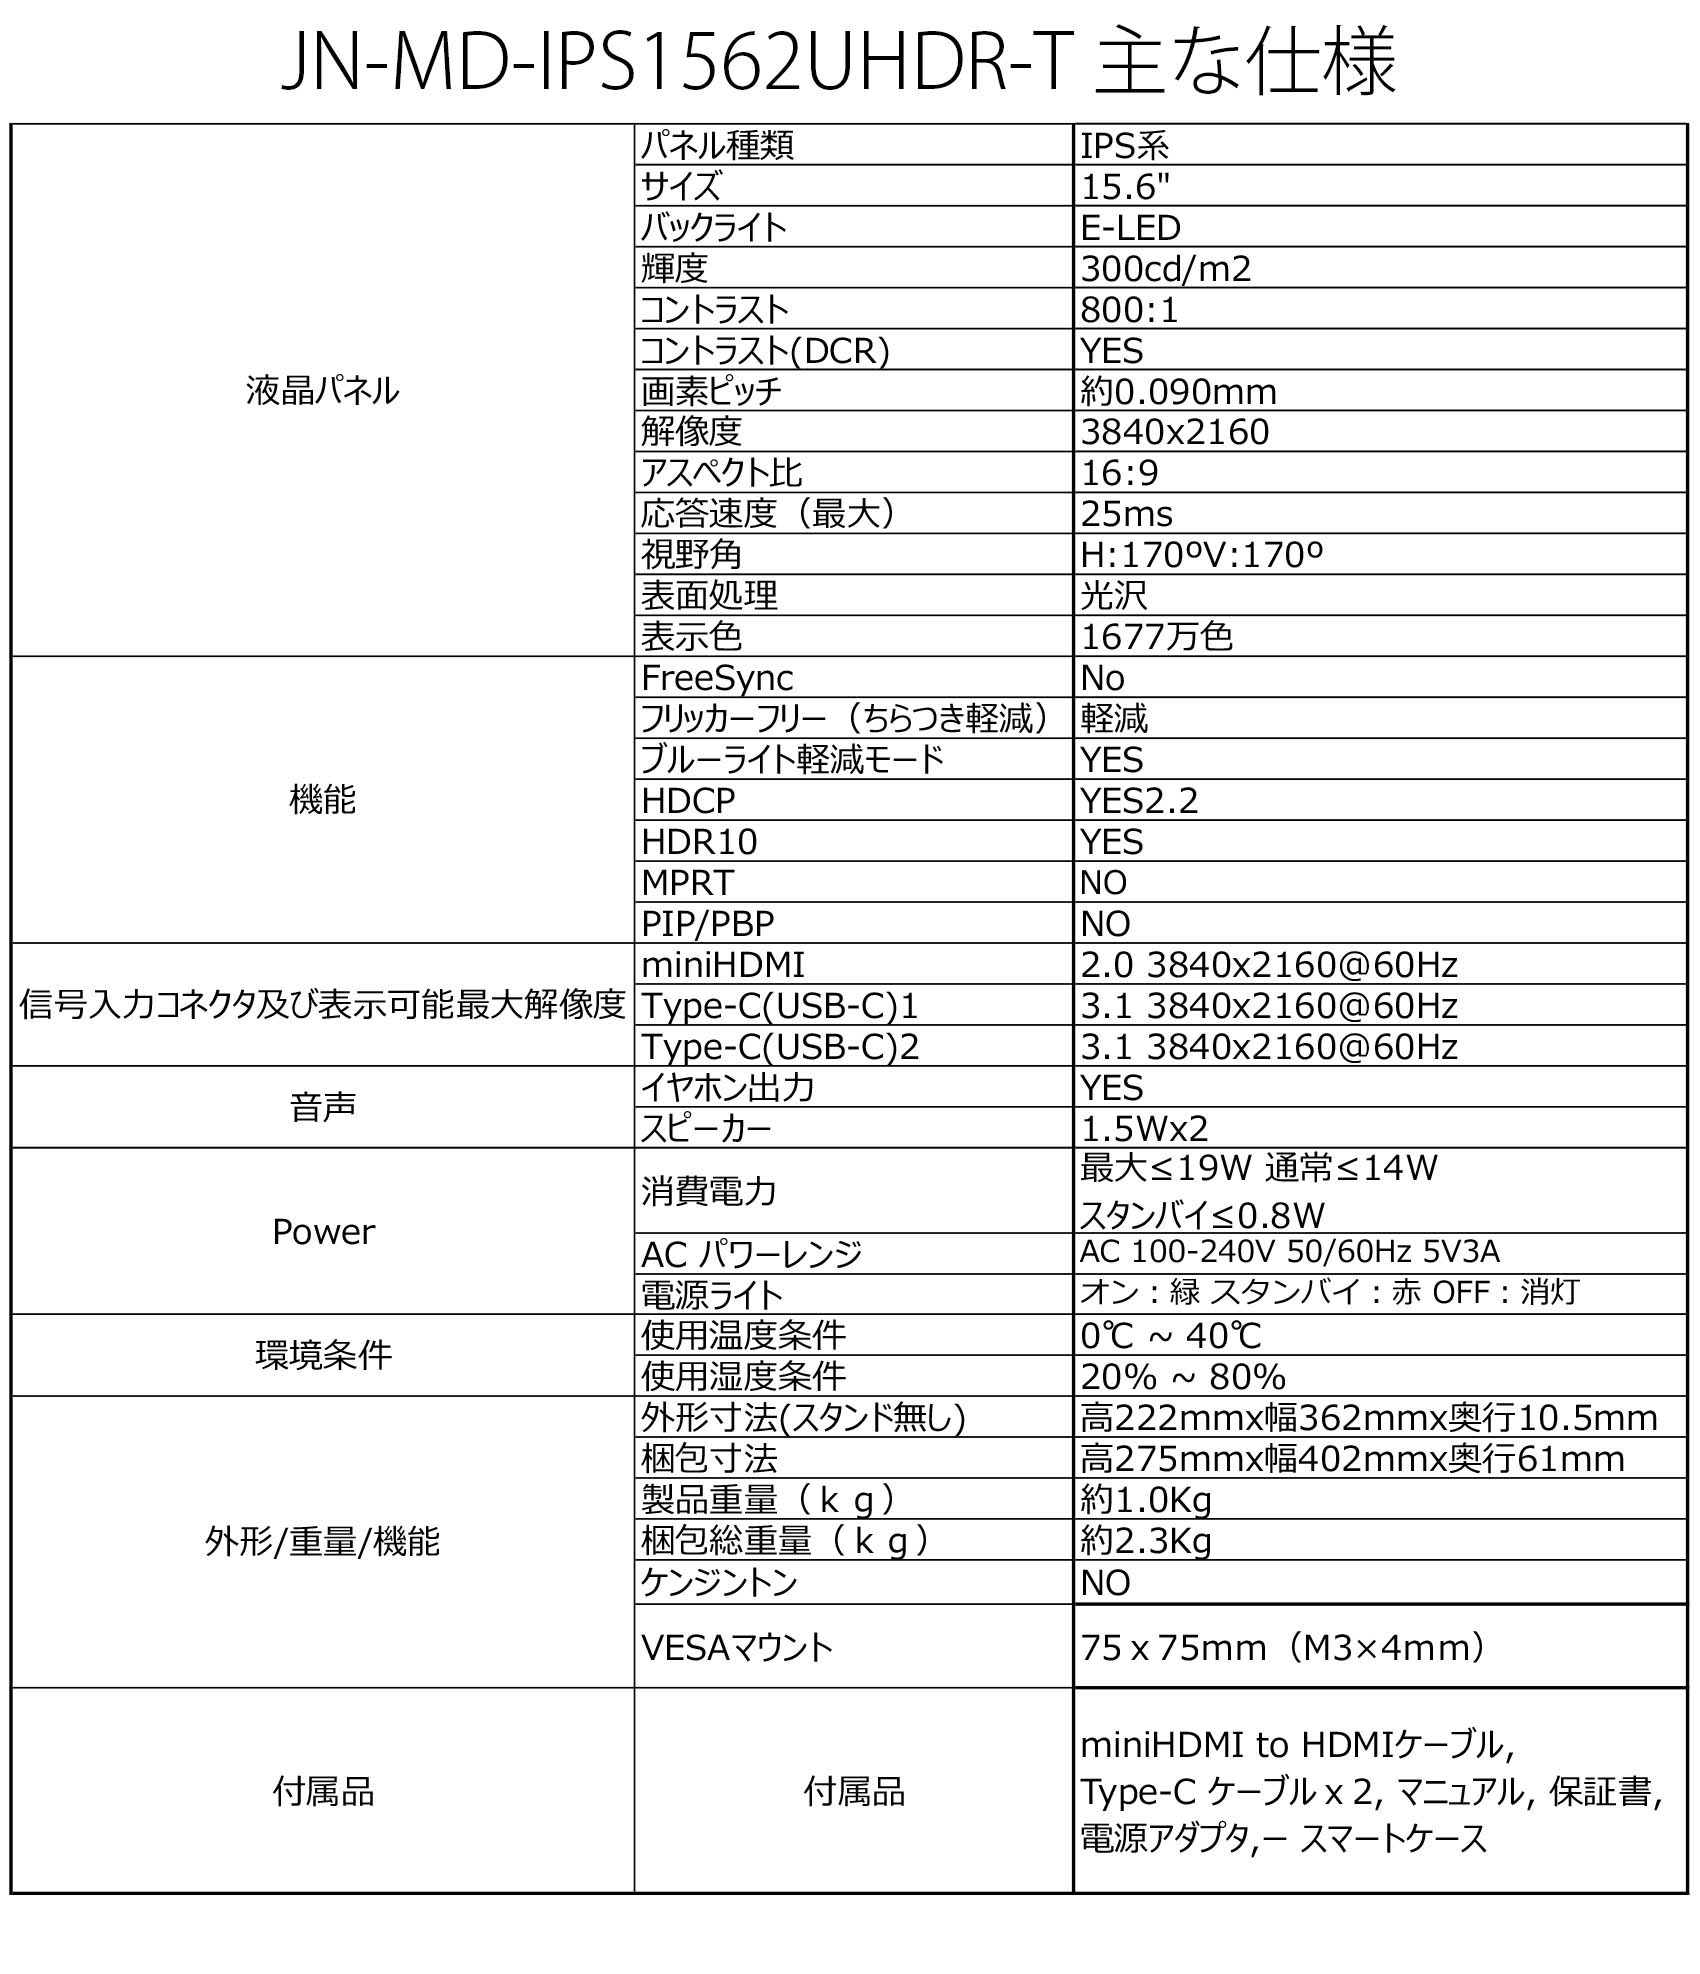 JAPANNEXT 「JN-MD-IPS1562UHDR-T」 <br>15.6型 4Kモバイルモニター<br